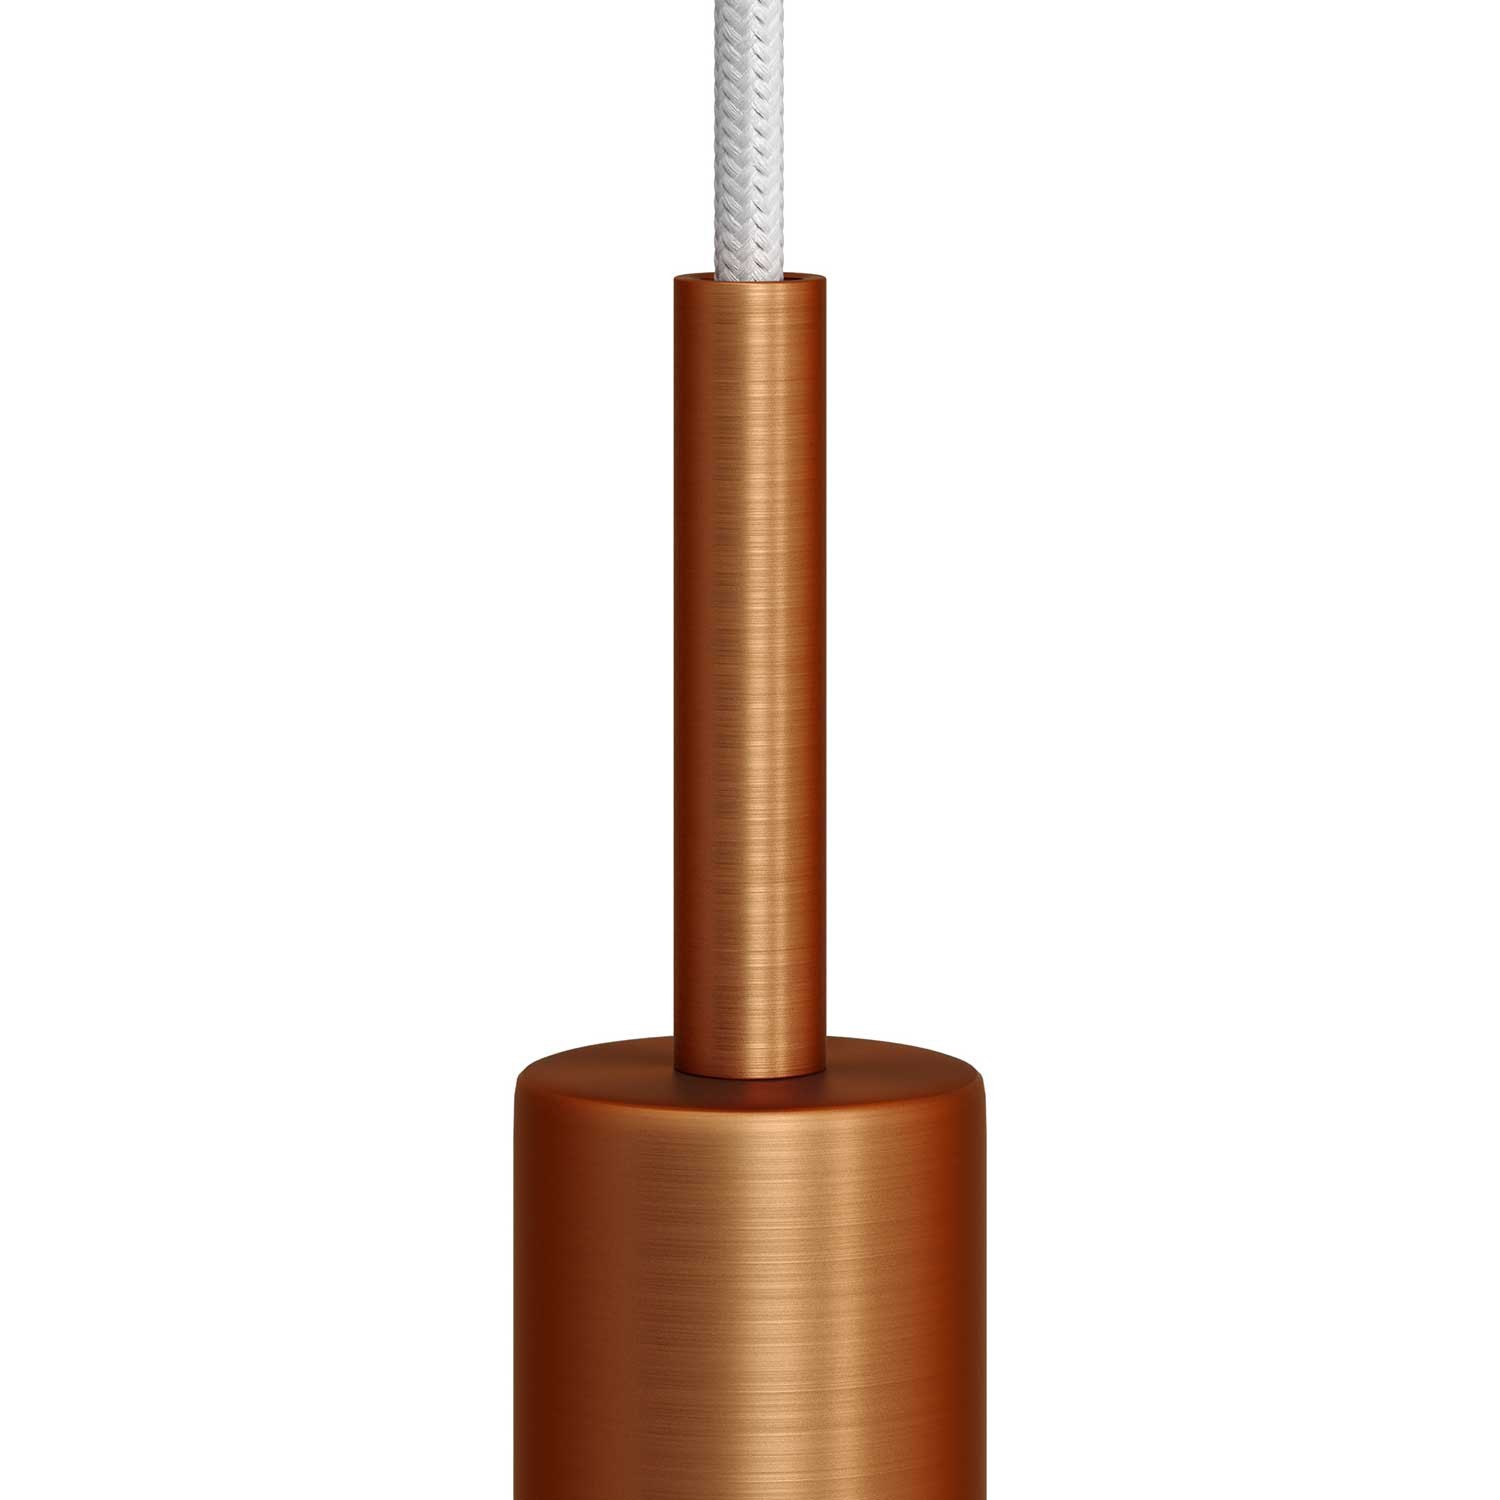 Cilindrische metalen kabelklem van 7 cm, compleet met pendelbuis, moer en ring